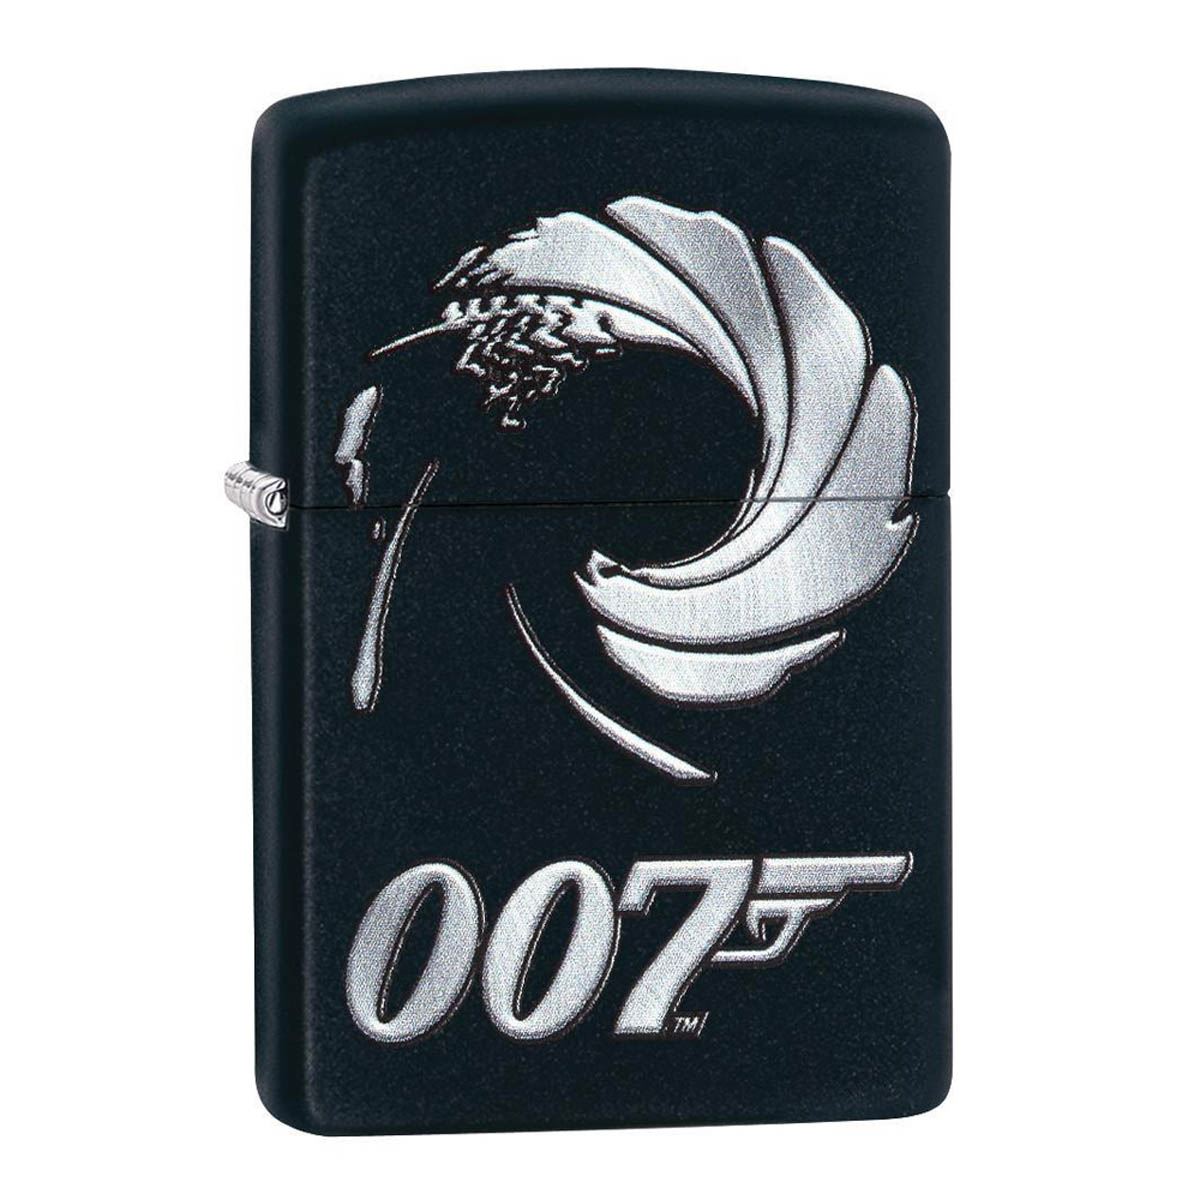 Encendedor Zippo James Bond 007 Negro